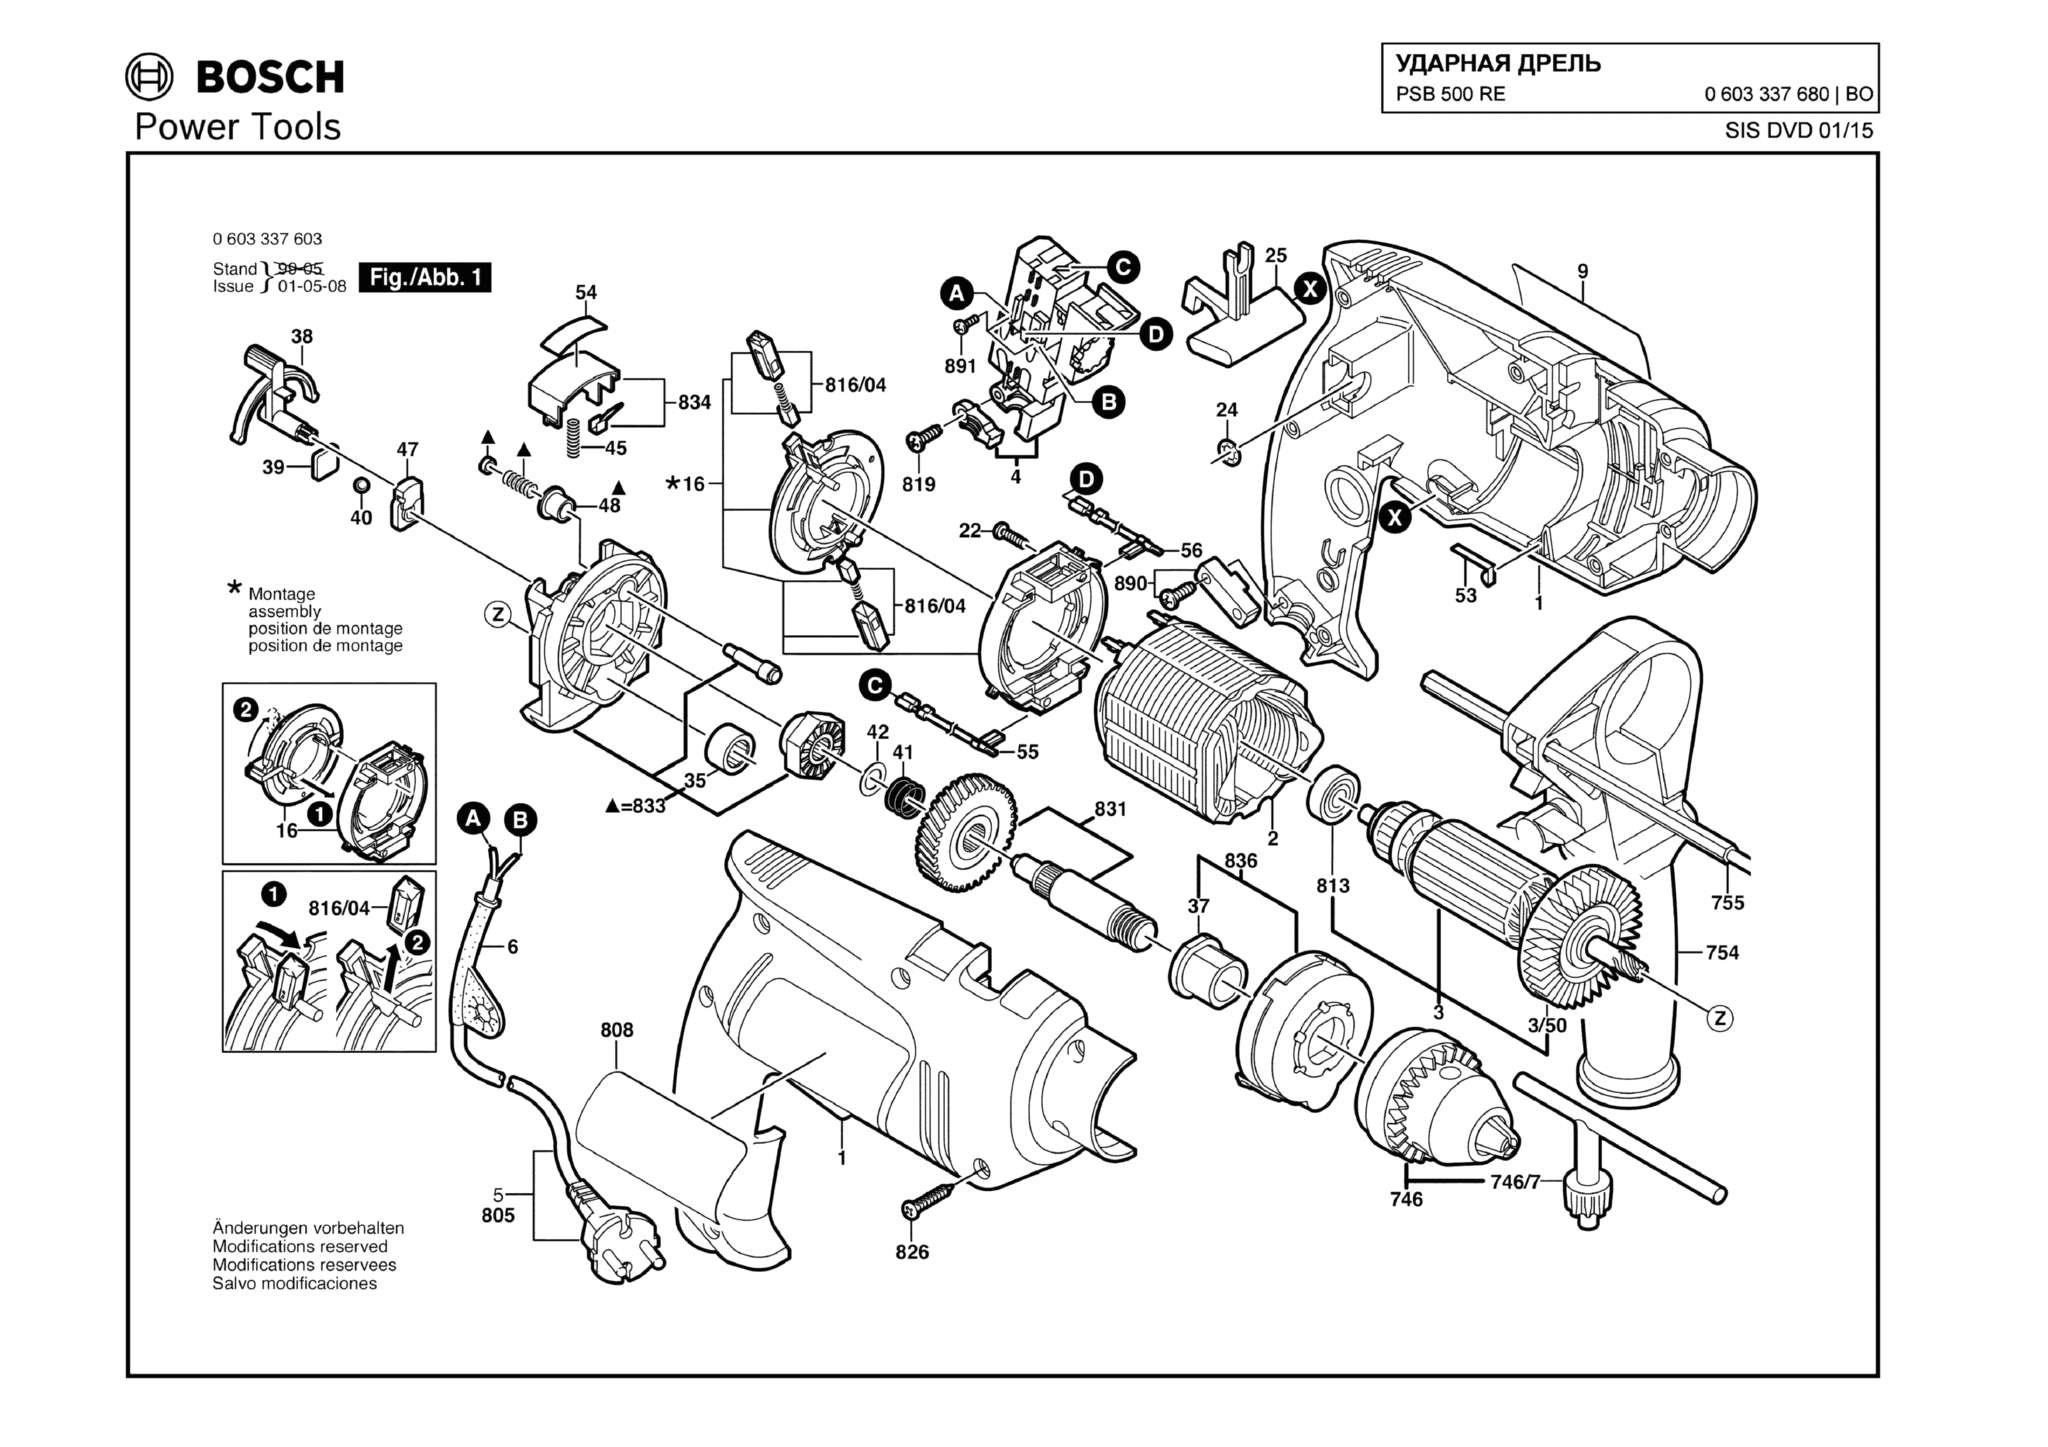 Запчасти, схема и деталировка Bosch PSB 500 RE (ТИП 0603337680)